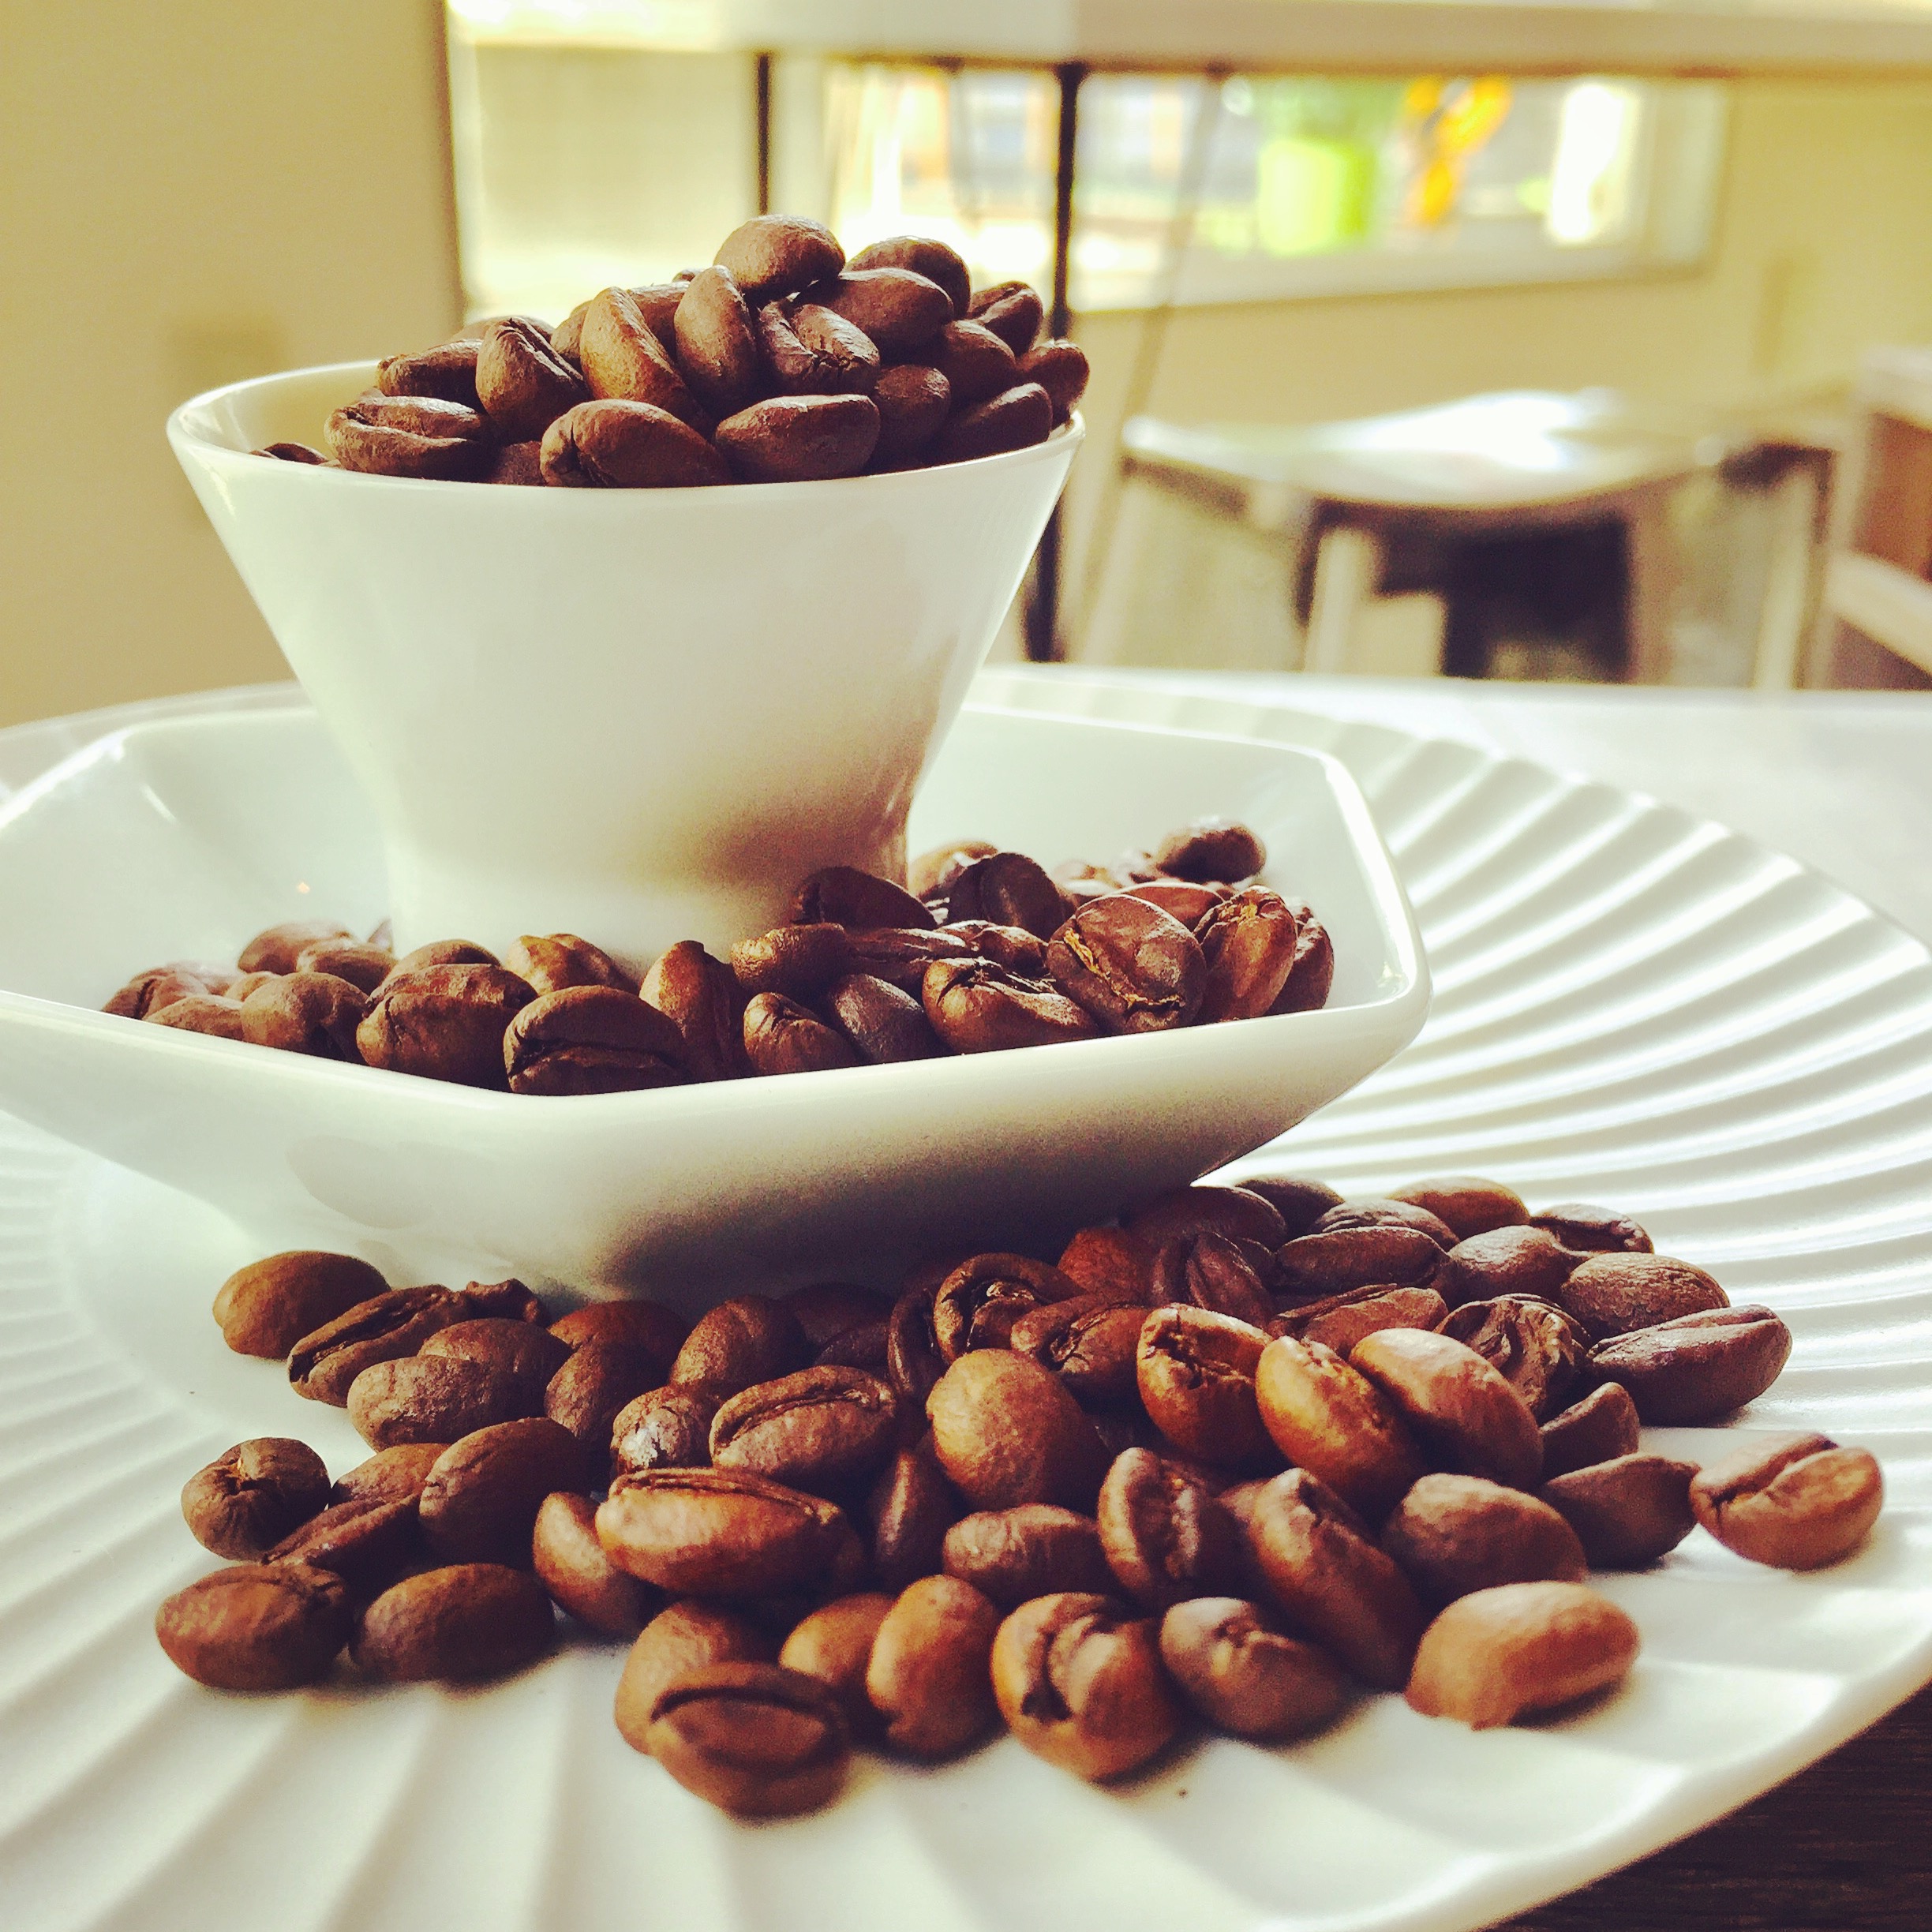 器に盛られたコーヒー豆